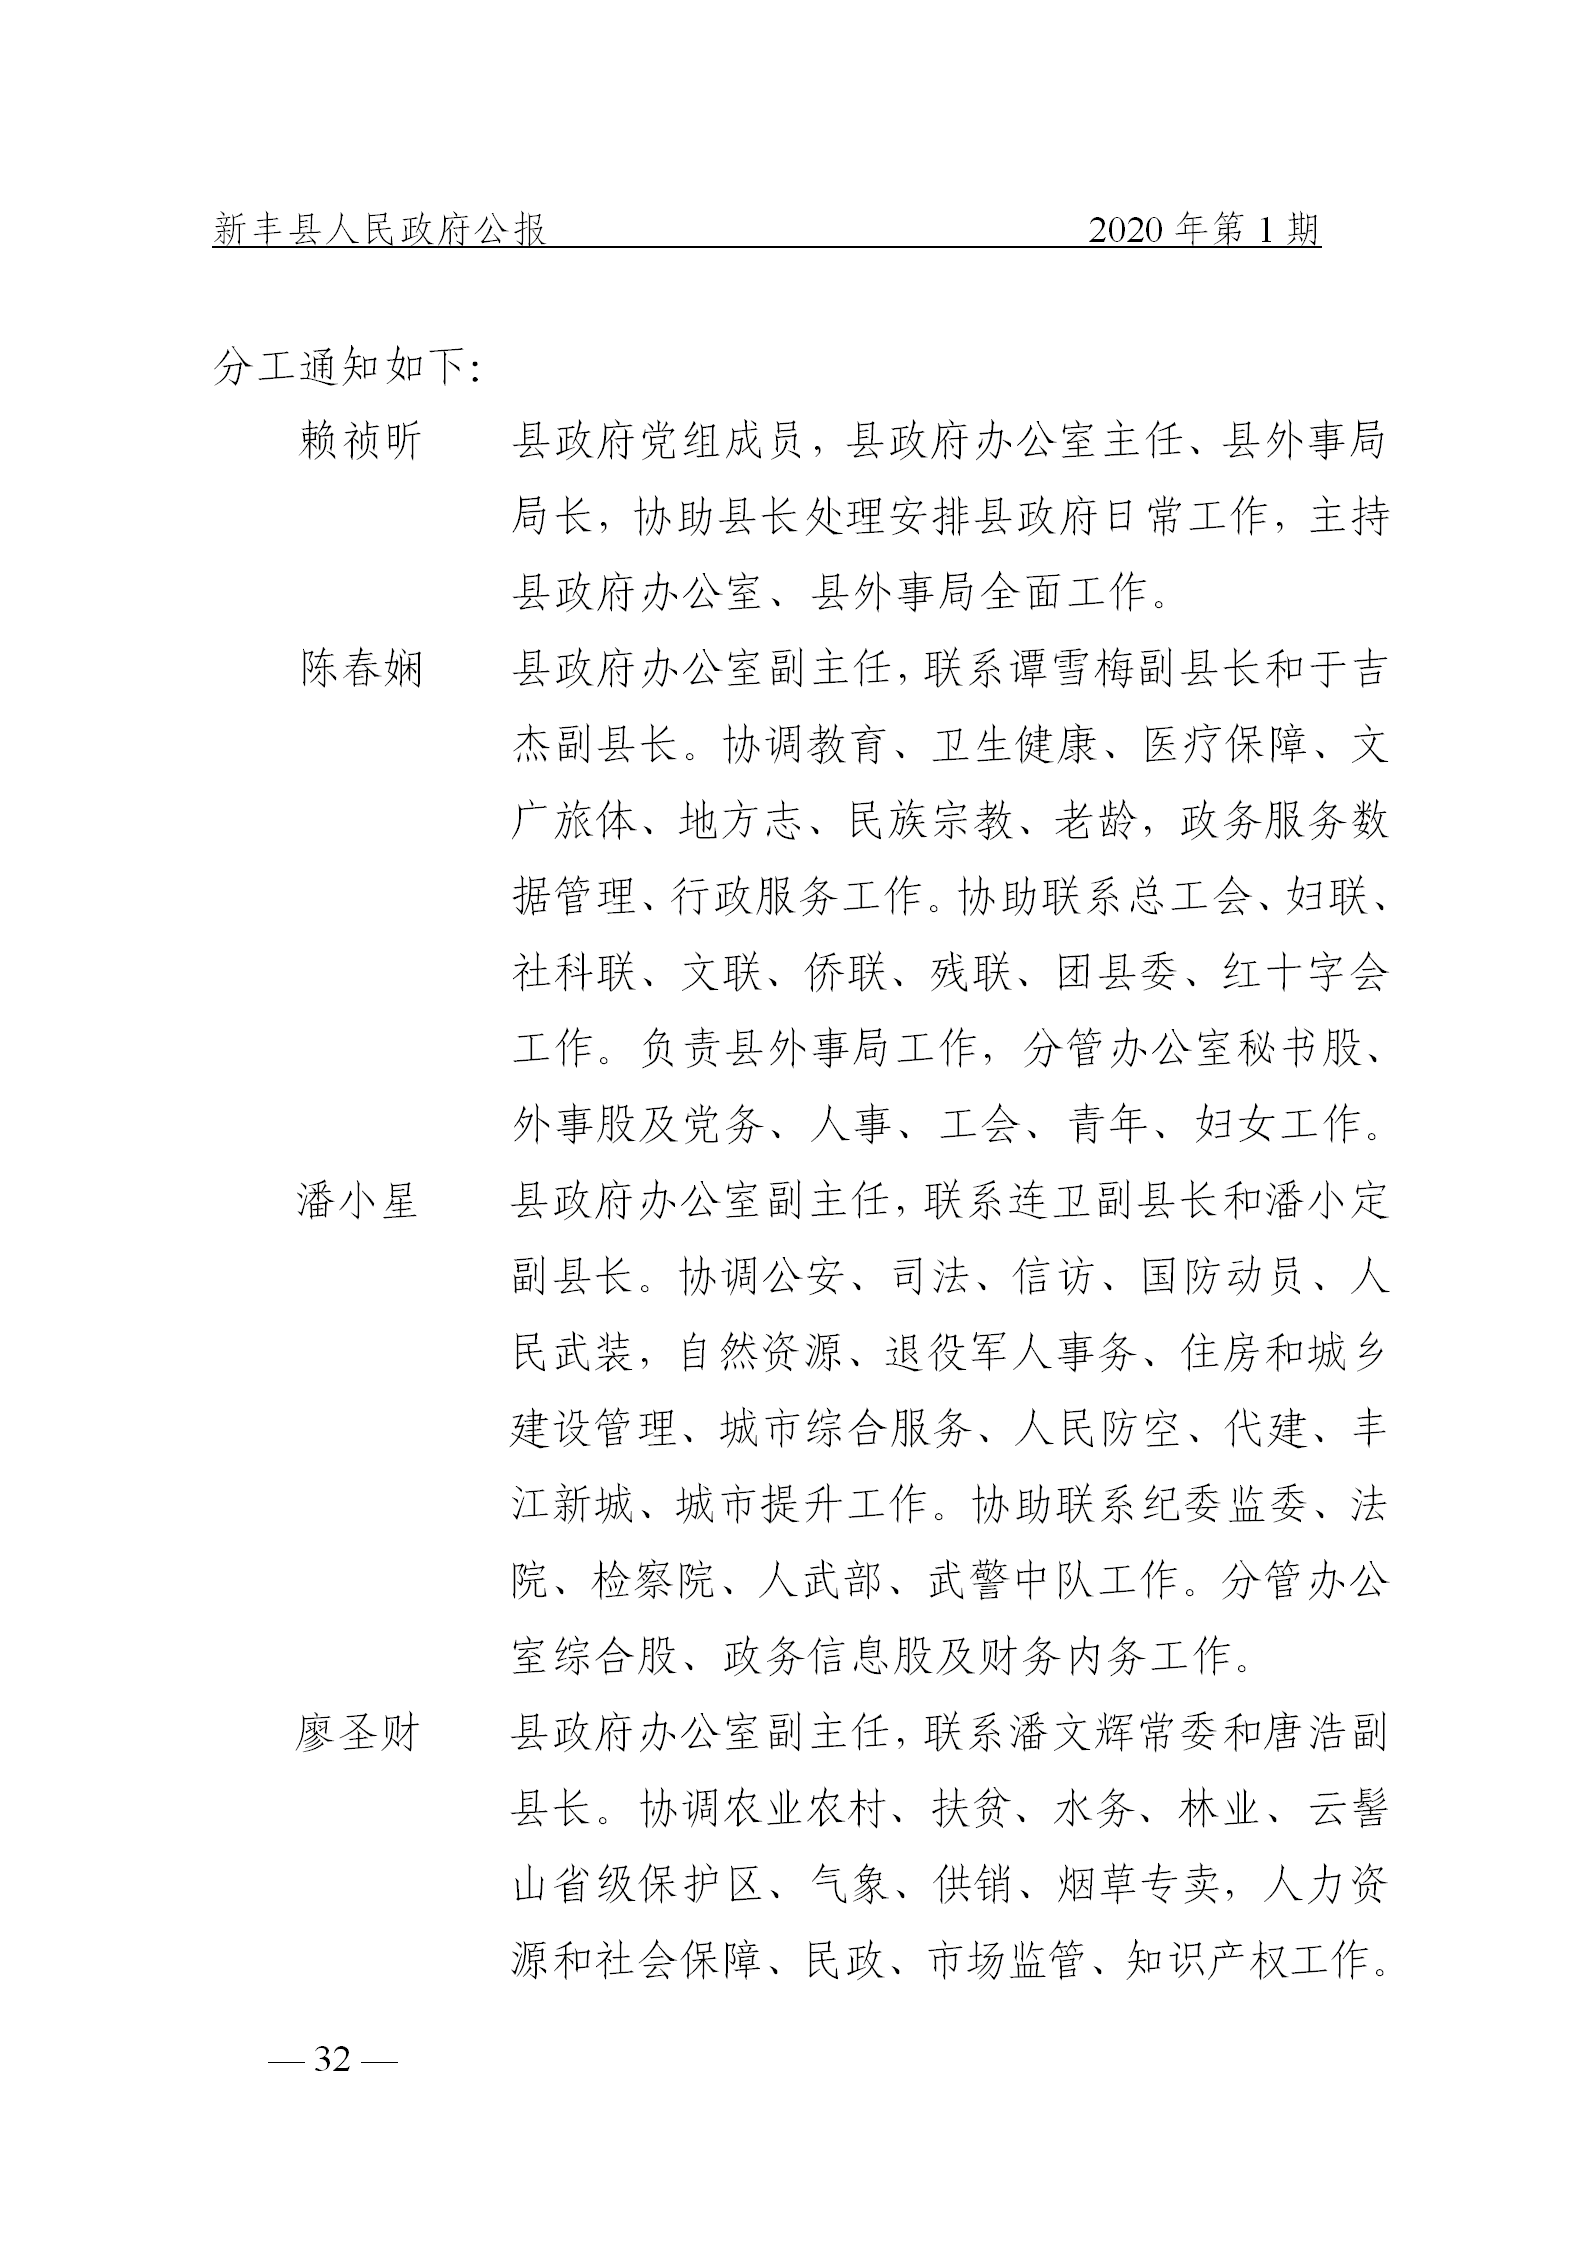 《新丰县人民政府公报》2020年第1期(1)_32.png